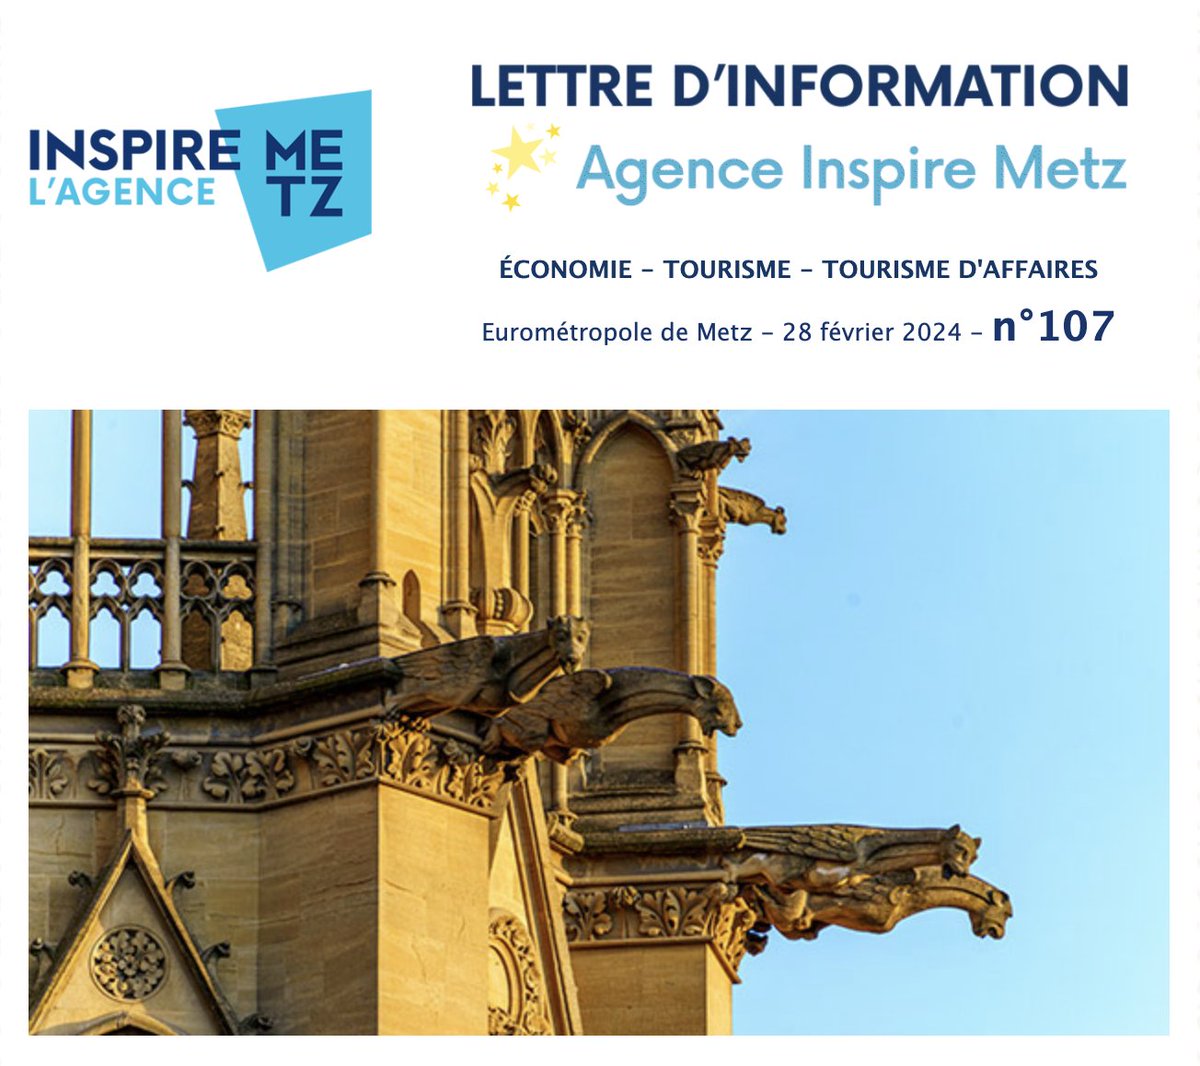 𝗡𝗲𝘄𝘀𝗹𝗲𝘁𝘁𝗲𝗿 𝗜𝗻𝘀𝗽𝗶𝗿𝗲 𝗠𝗲𝘁𝘇 Tourisme, tourisme d'affaires, développement économique... tous ce que vous devez savoir sur l'Eurométropole de Metz en moins de 5 minutes est ici : inspire-metz.com/newsletter/fr/…